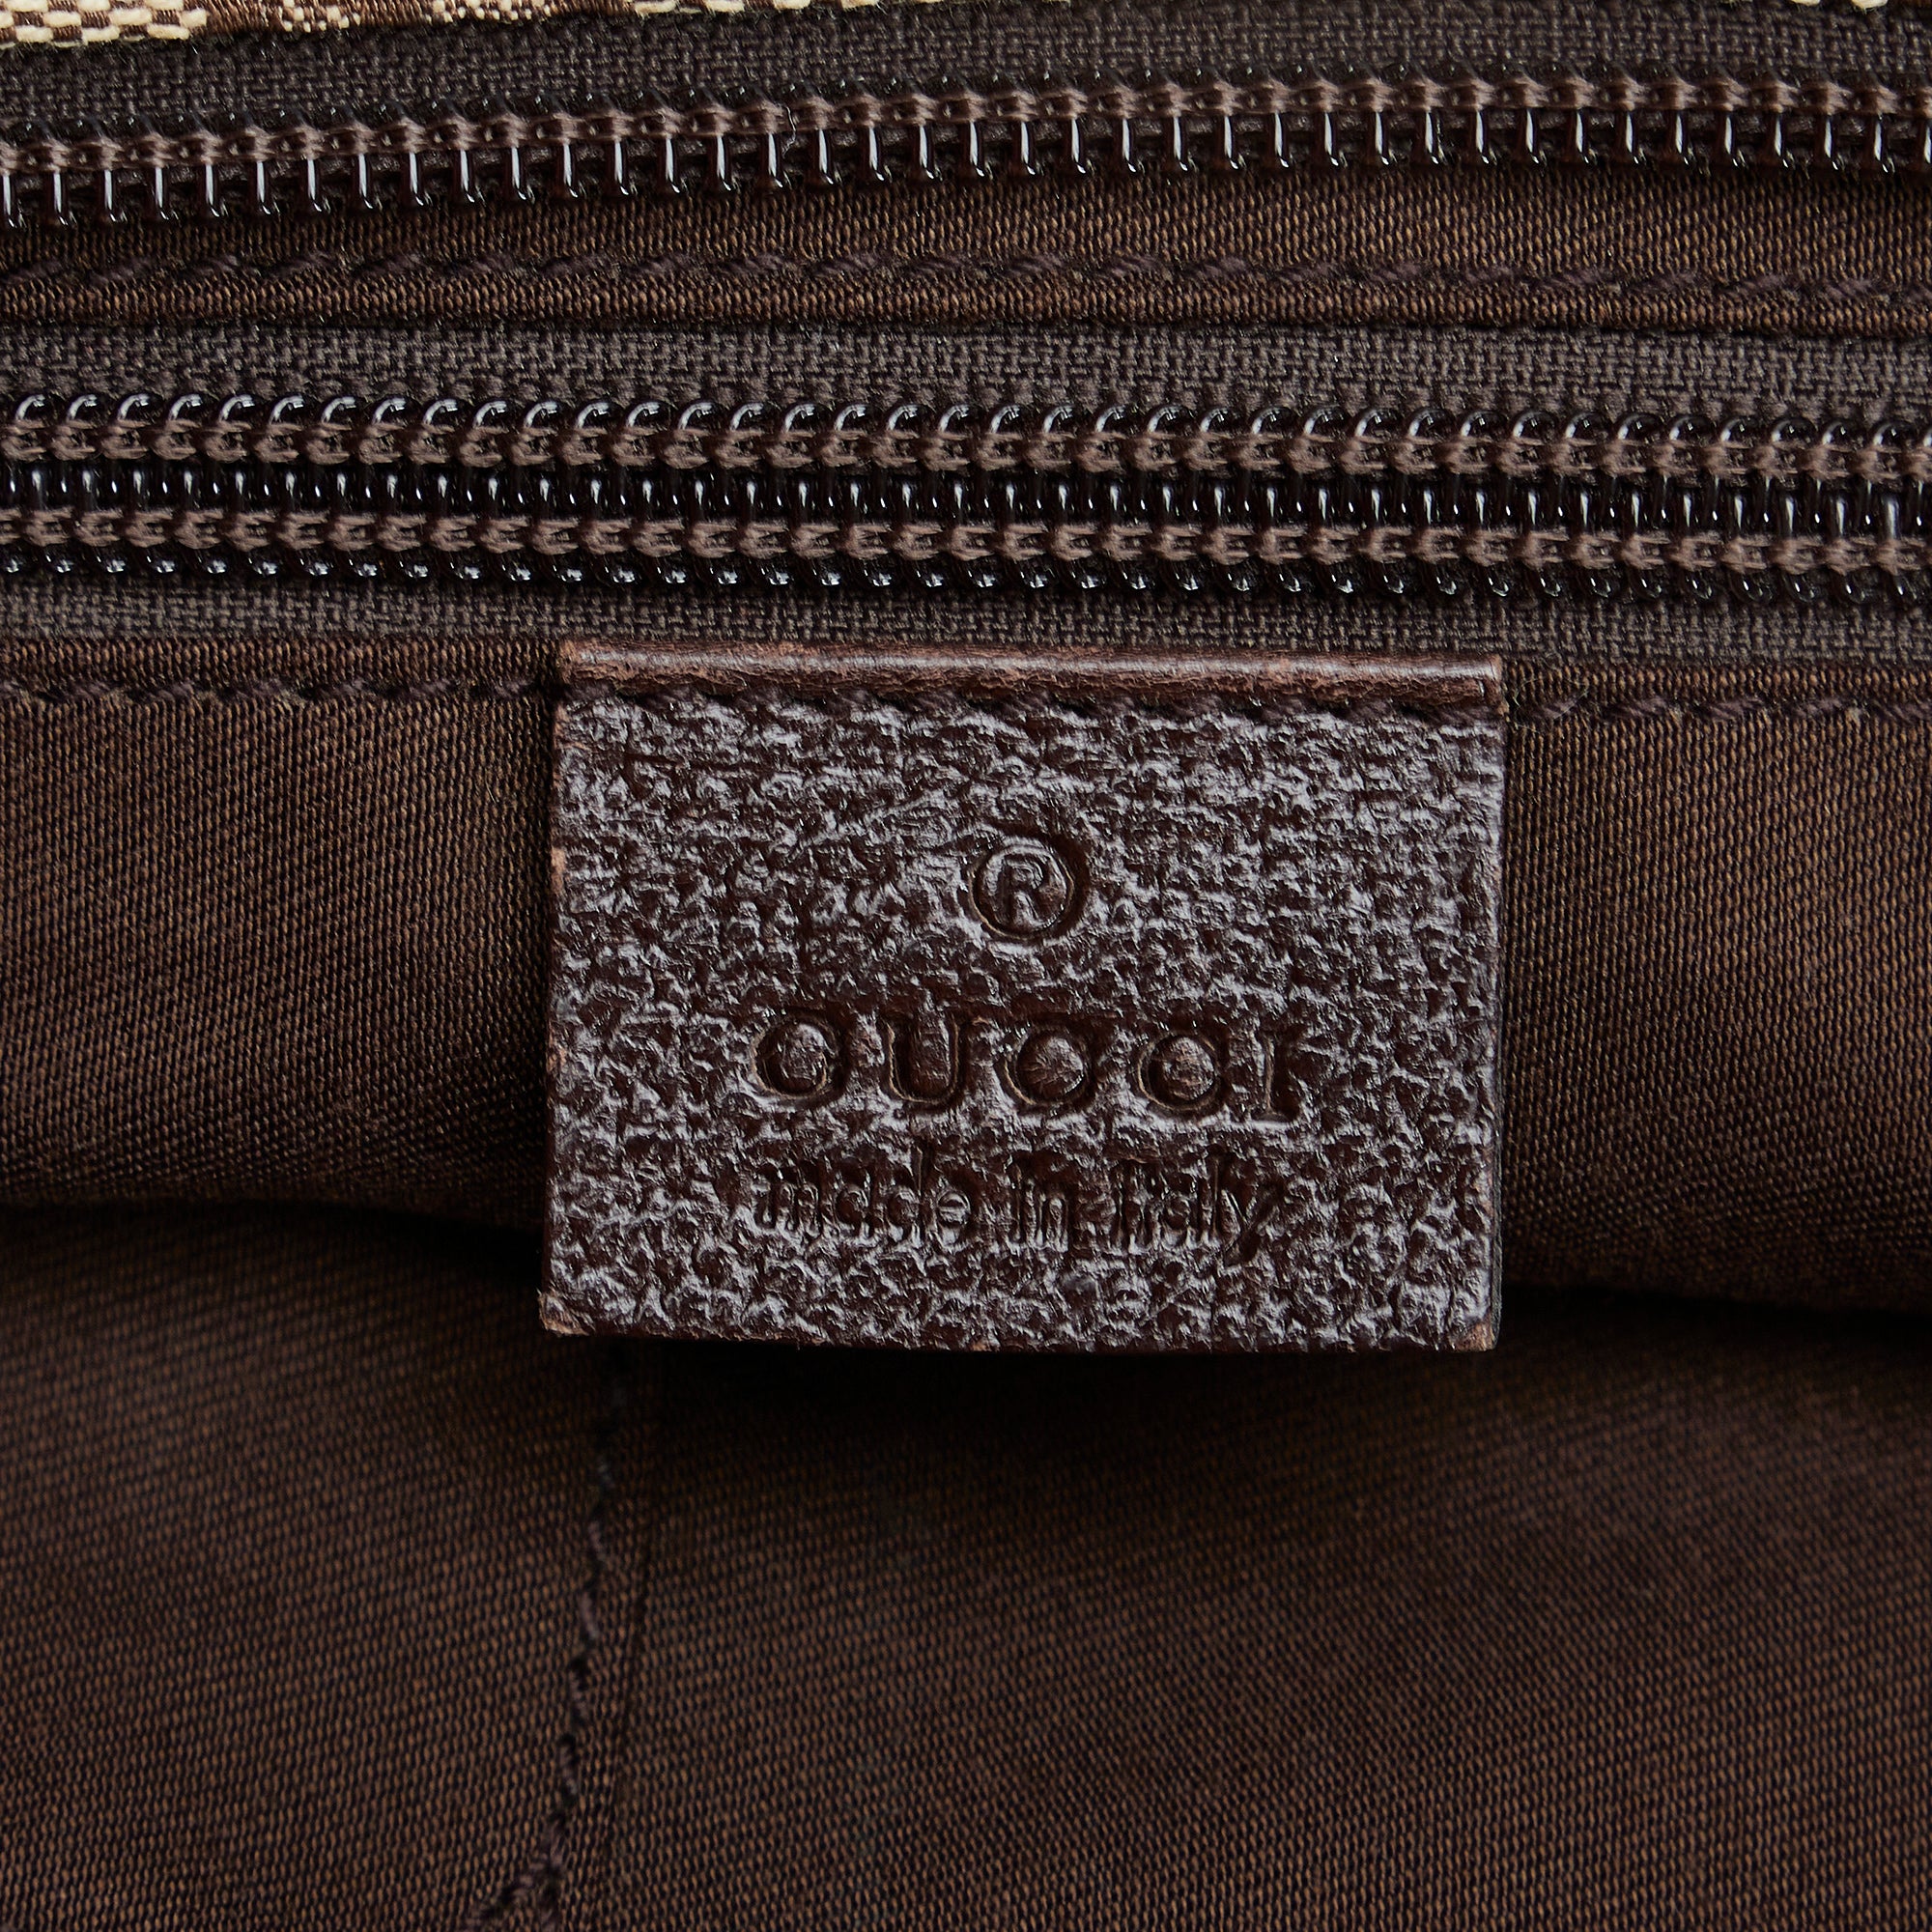 Brown Gucci GG Canvas Web Tote Bag – Designer Revival